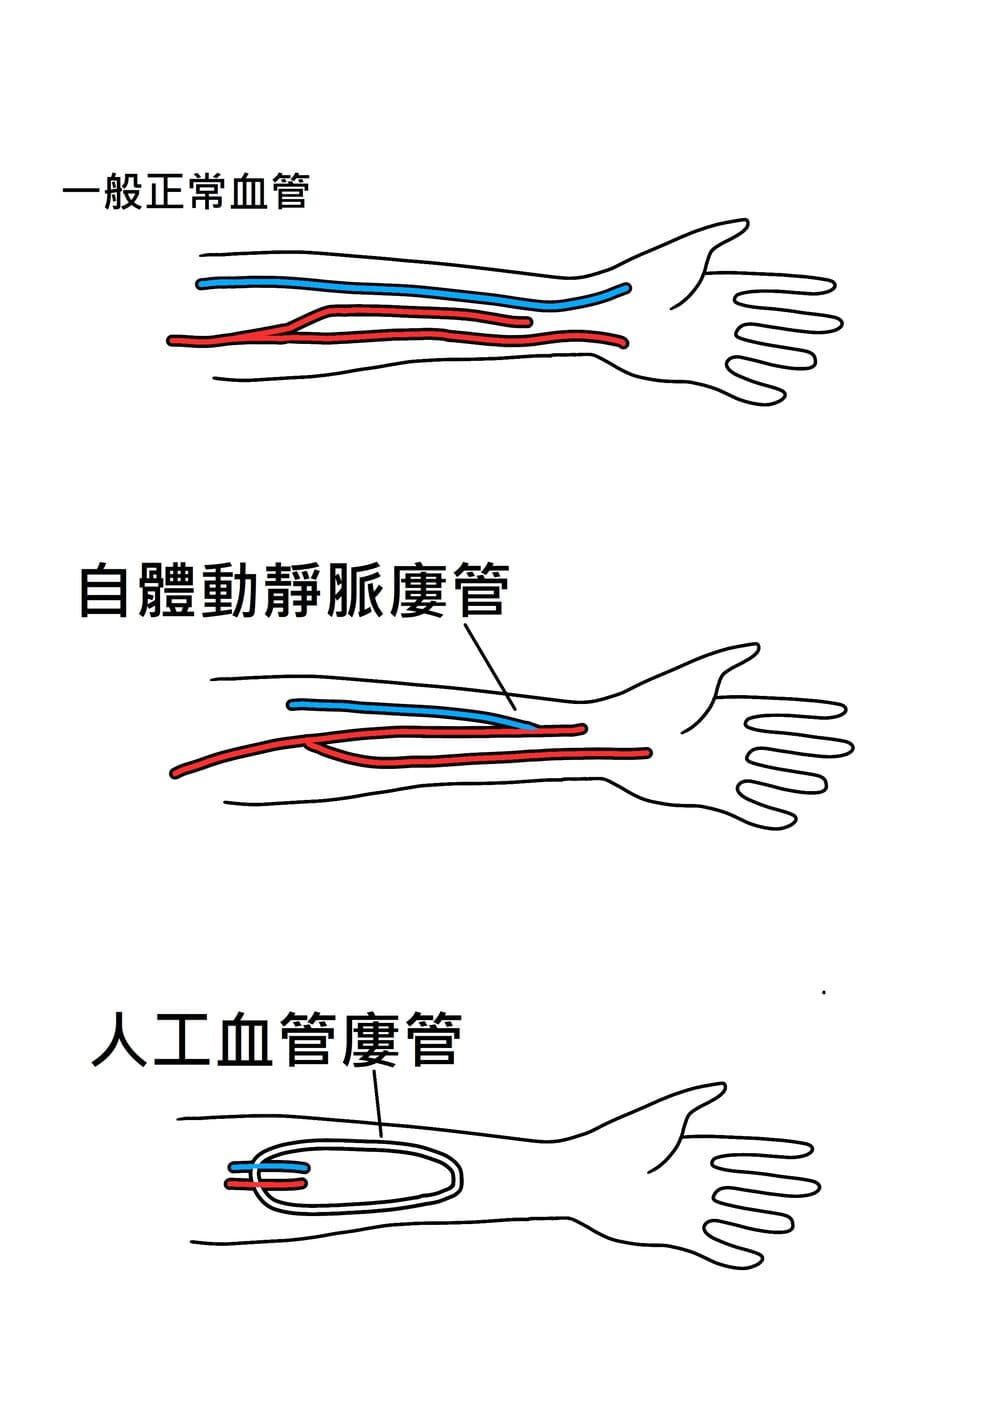 自體動靜脈廔管與人工血管廔管示意圖